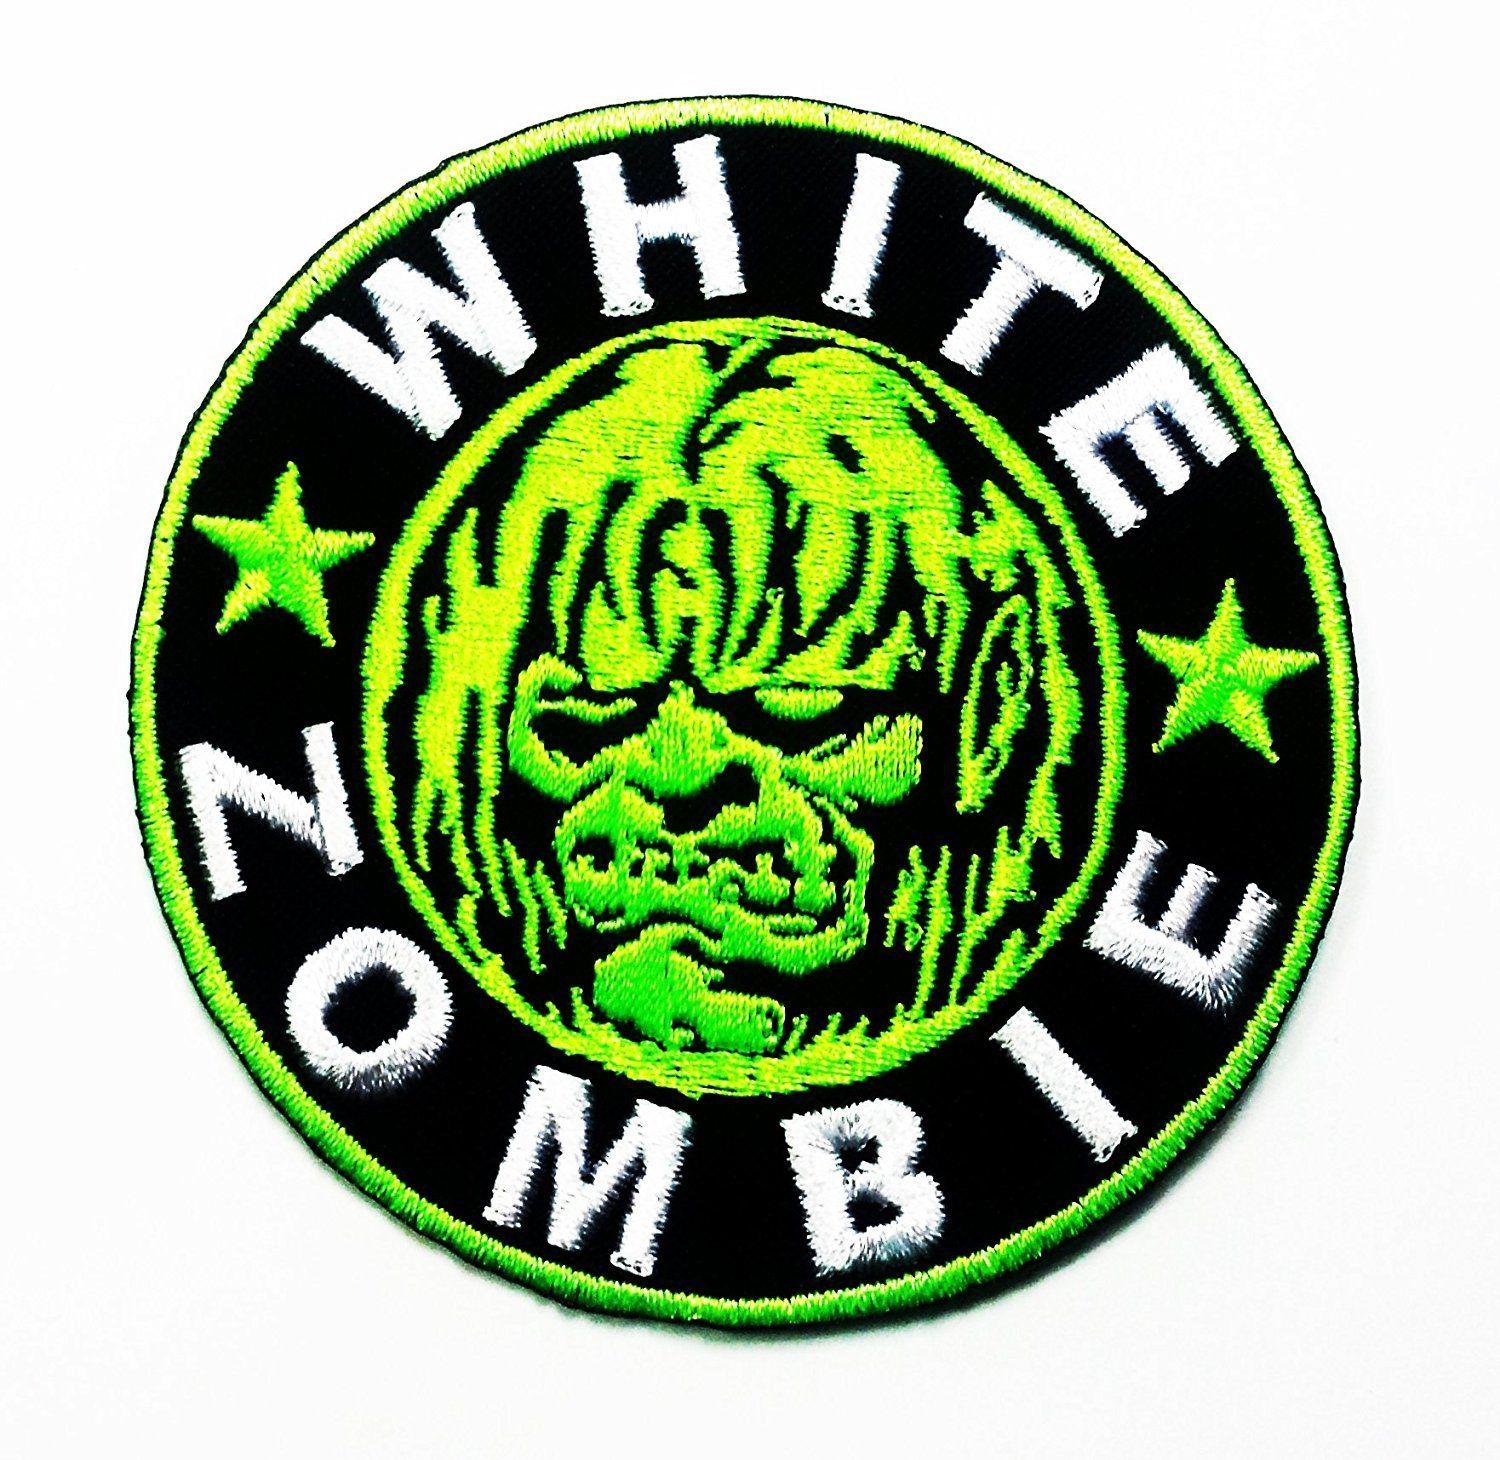 Punk Rock Logo - White Zombie Heavy Metal Punk Rock Music Band Logo Patch